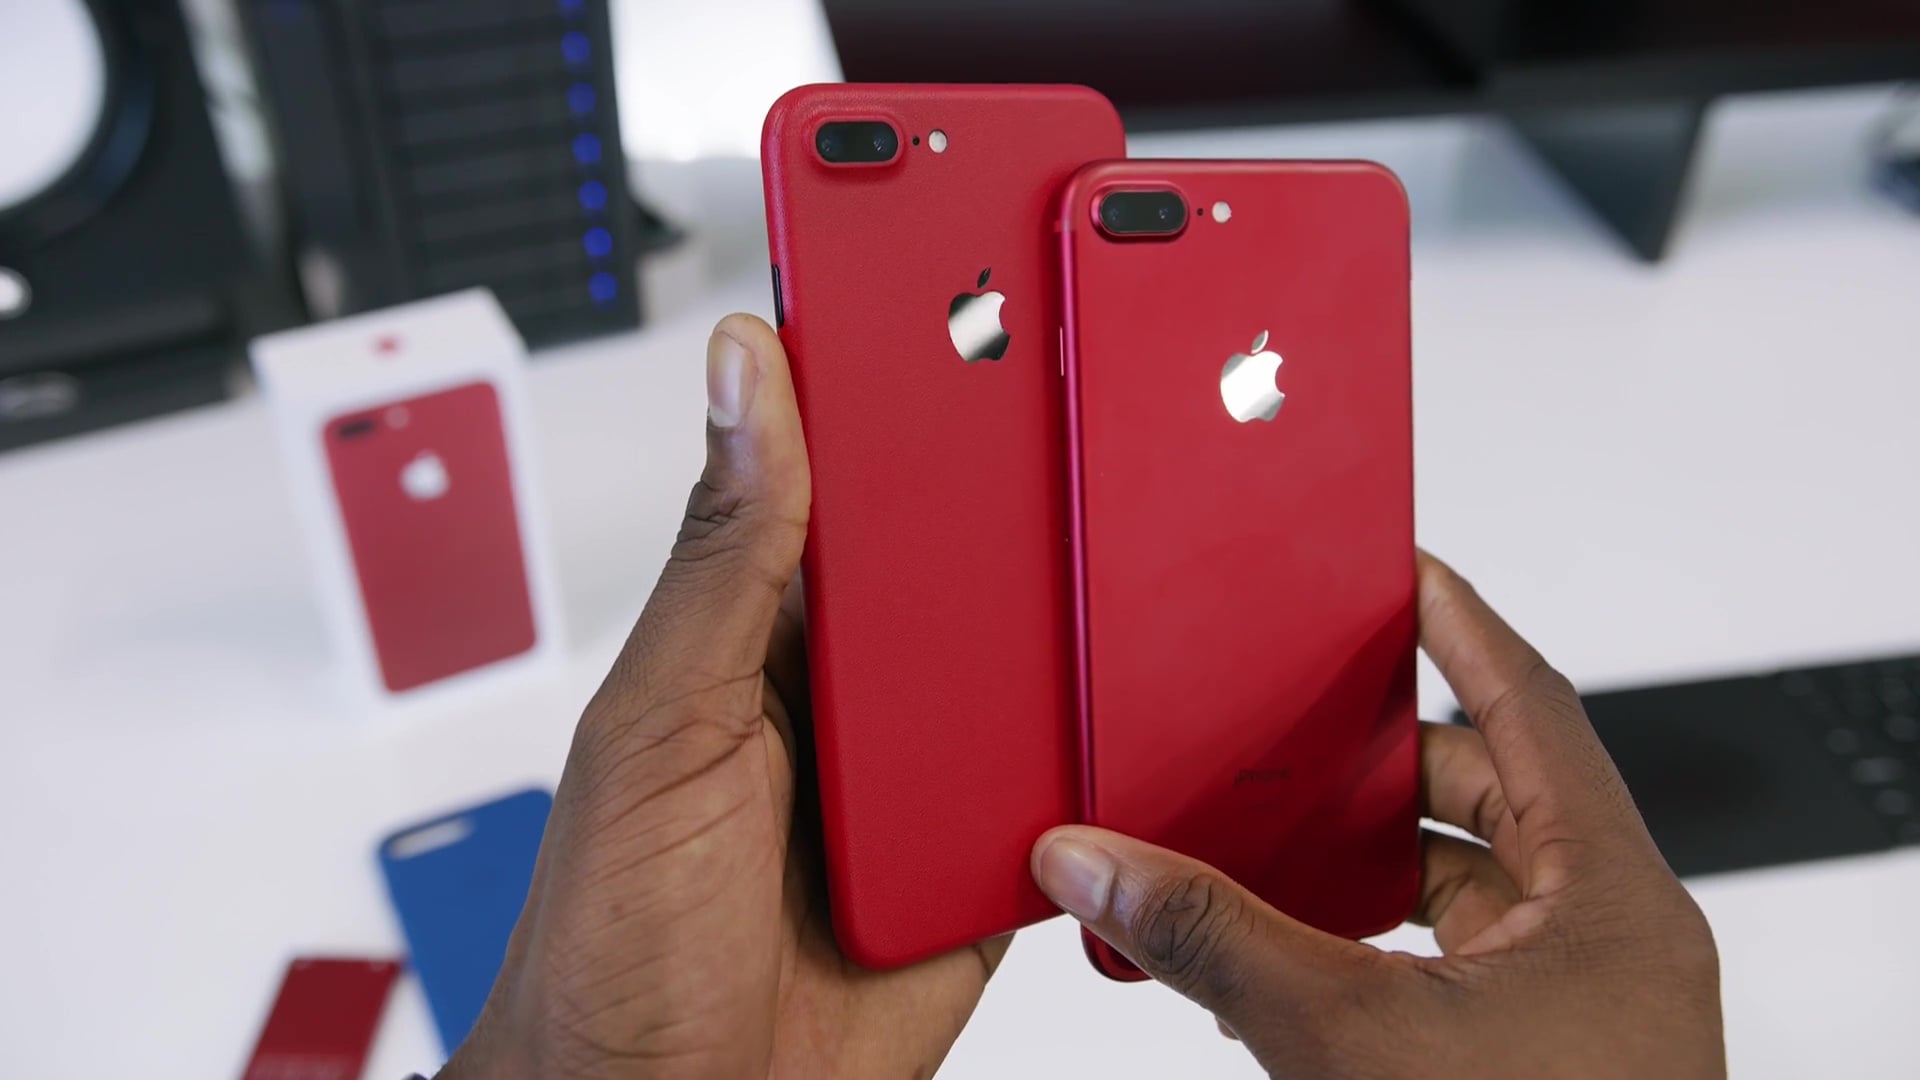 iPhone 7 Plus REDモデル開封動画、かなりキレイ | iPod LOVE